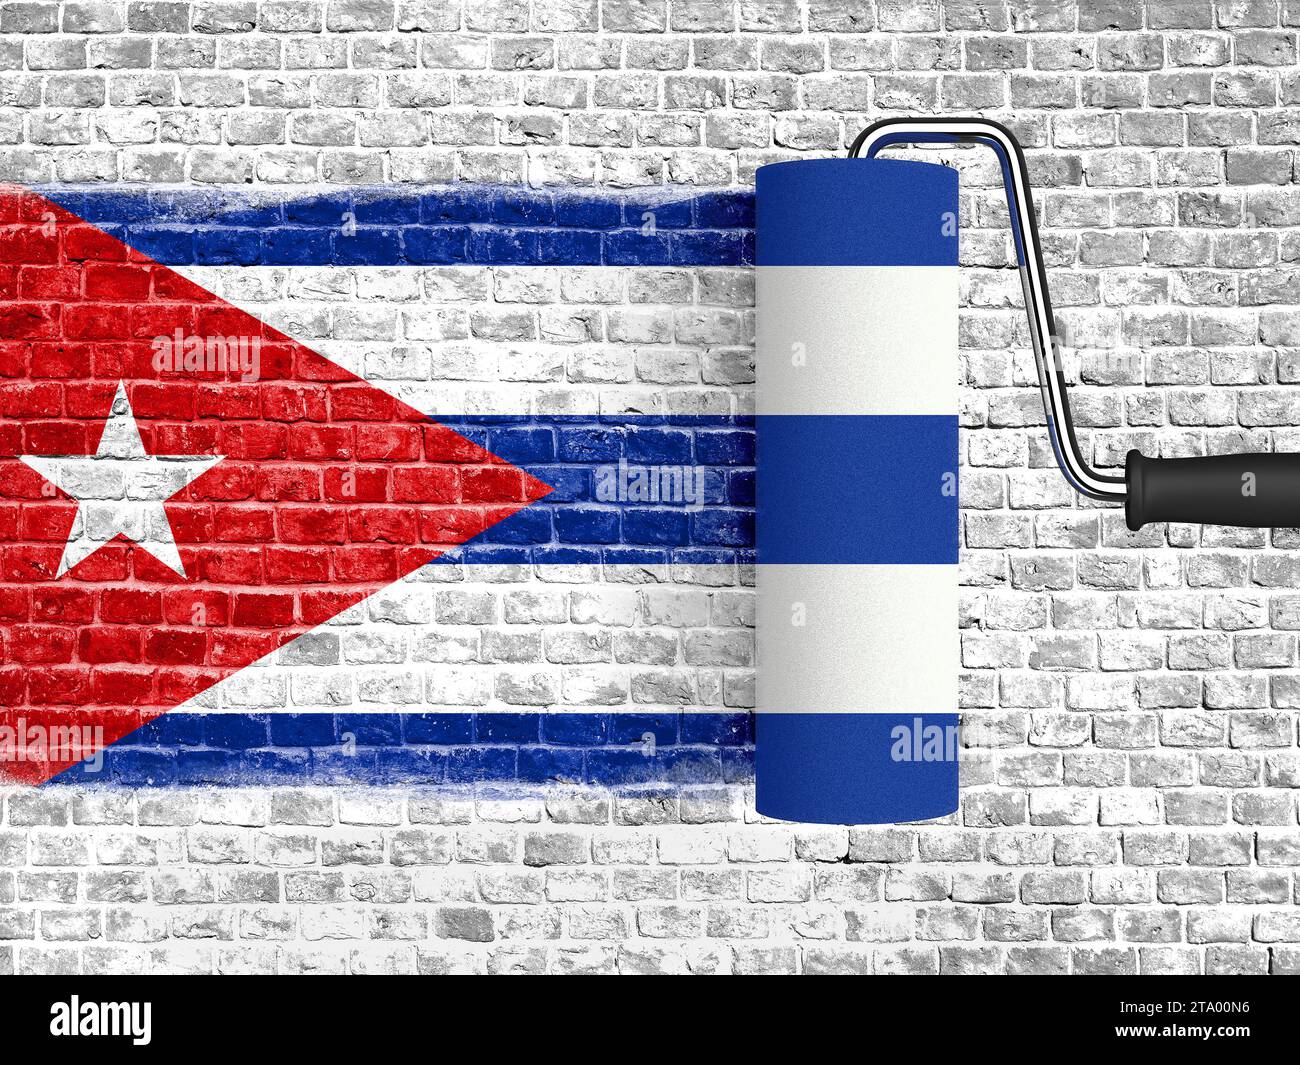 rouleau à peindre sur le mur de briques blanches avec le drapeau de cuba, mur avec la peinture goutte à goutte, couleur de texture rouge bleu et blanc du drapeau cubain Banque D'Images